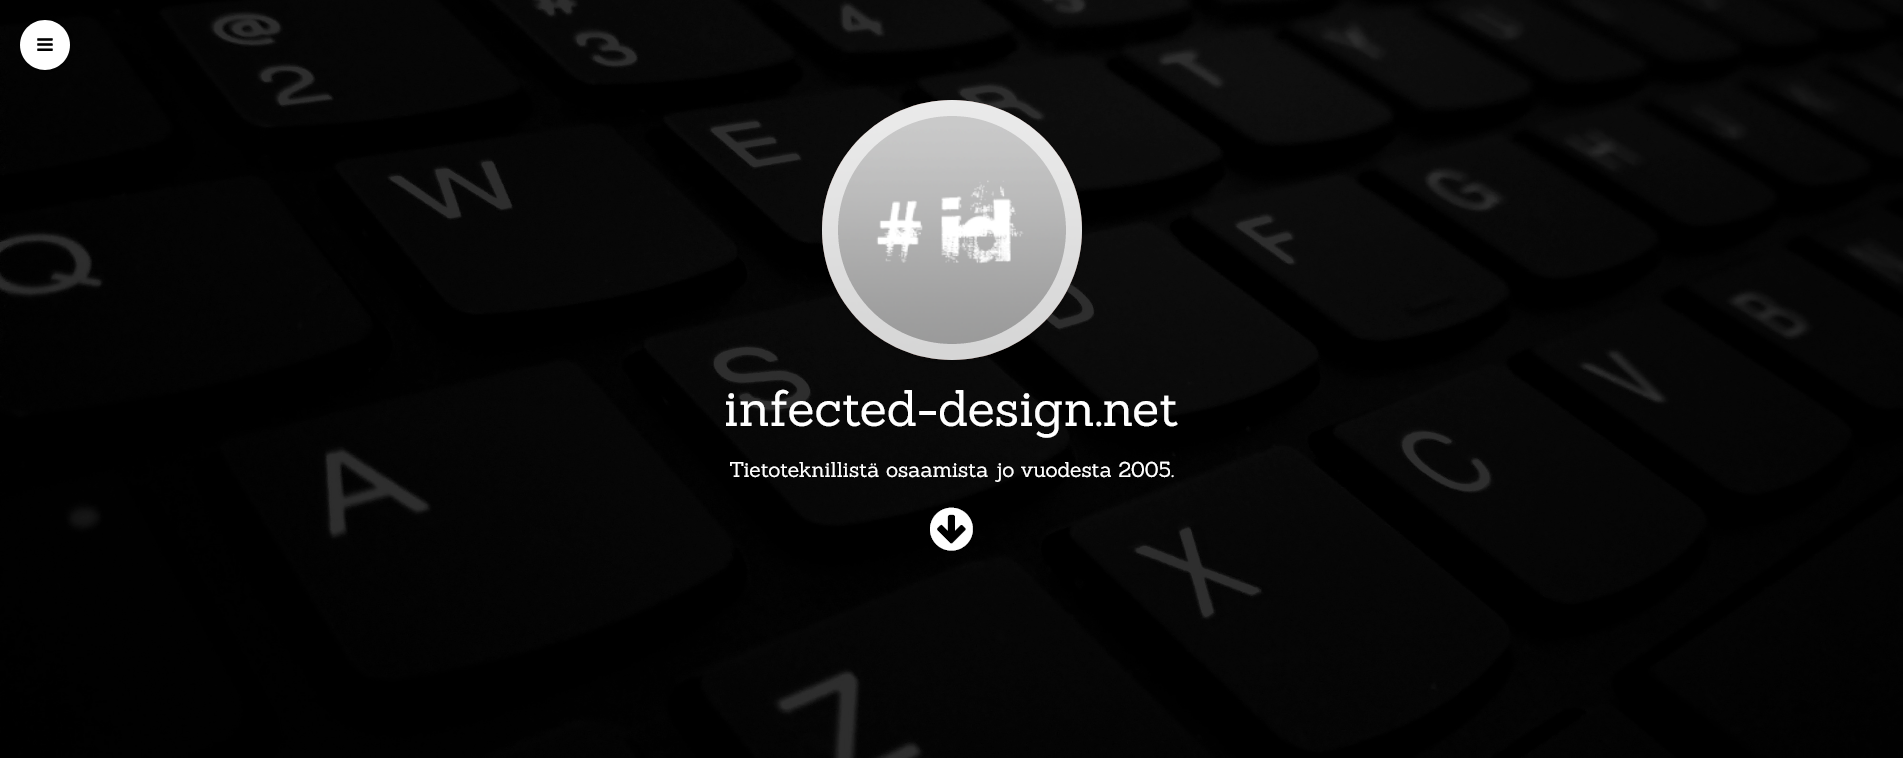 Infected-design.net - ennen